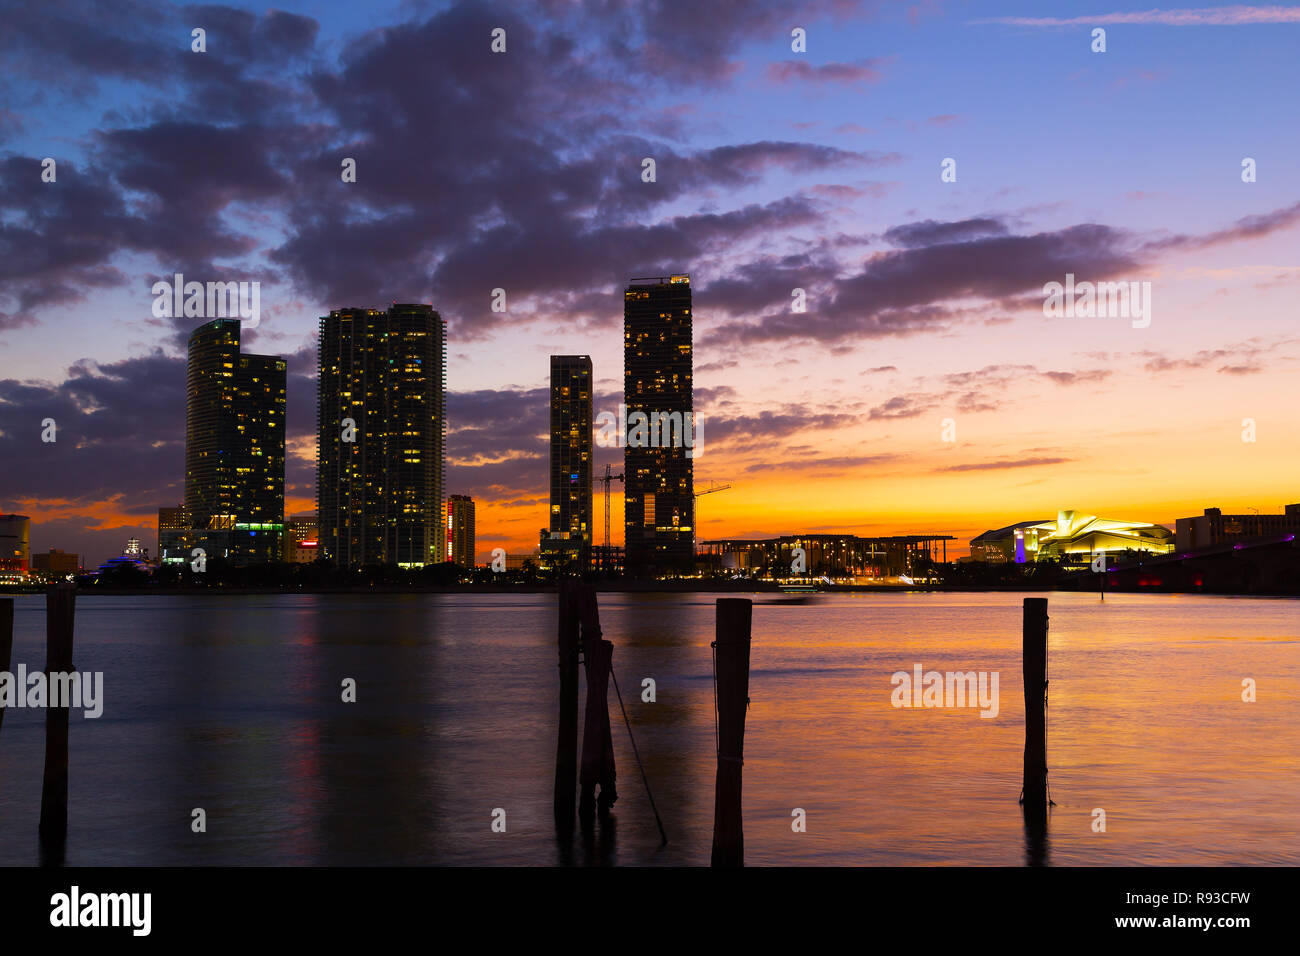 Plus de coucher de soleil spectaculaire Miami city centre-ville. Paysage urbain et l'eau calme au coucher du soleil. Banque D'Images